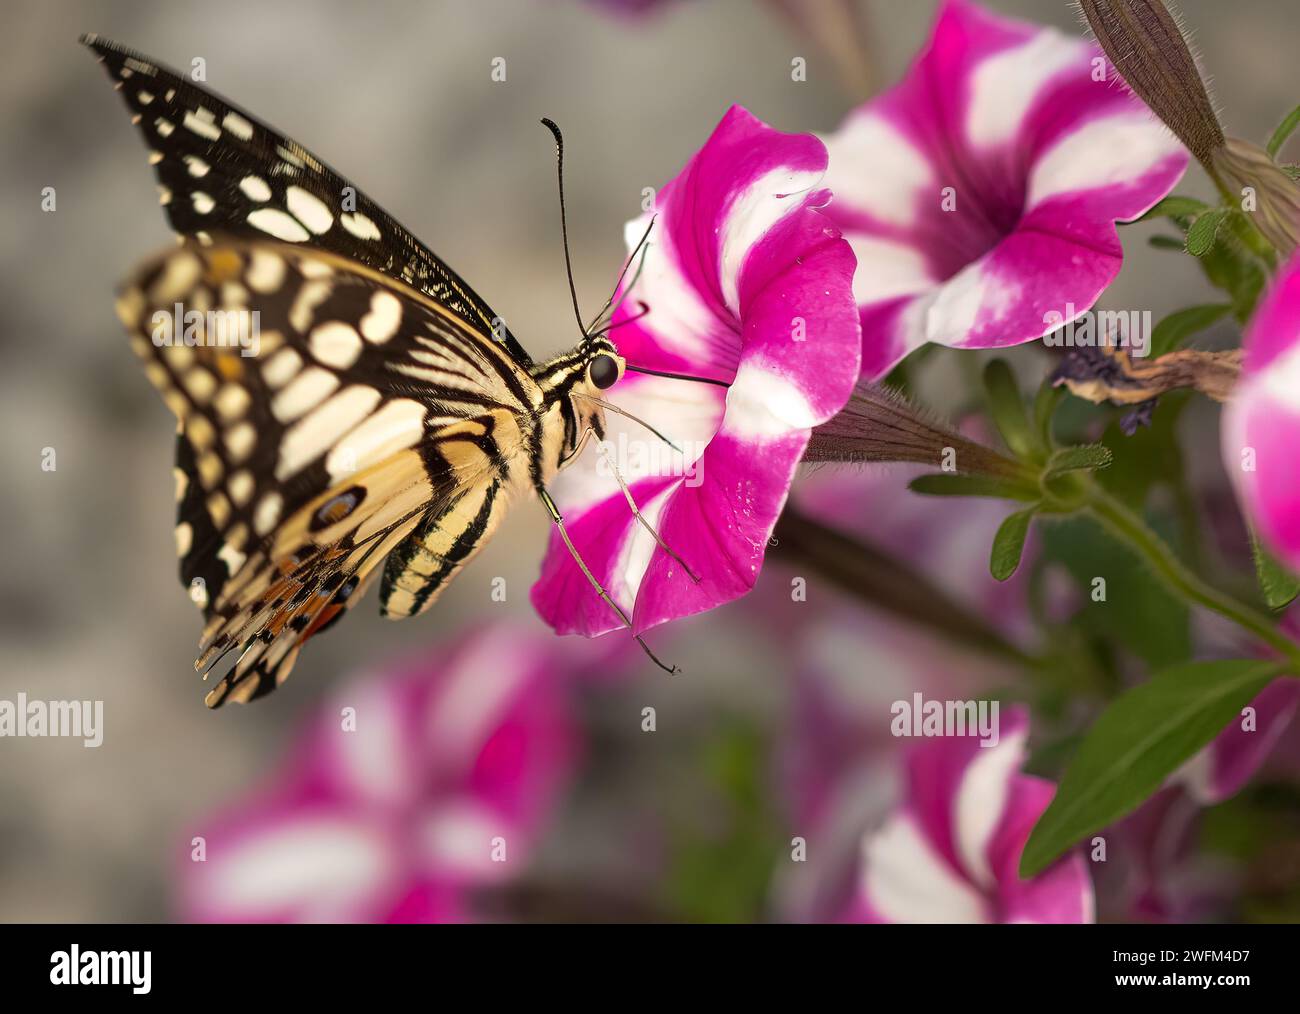 Un papillon à queue d'aronde sur une fleur rose et blanche. Papilio papillon sur une fleur rose. Banque D'Images